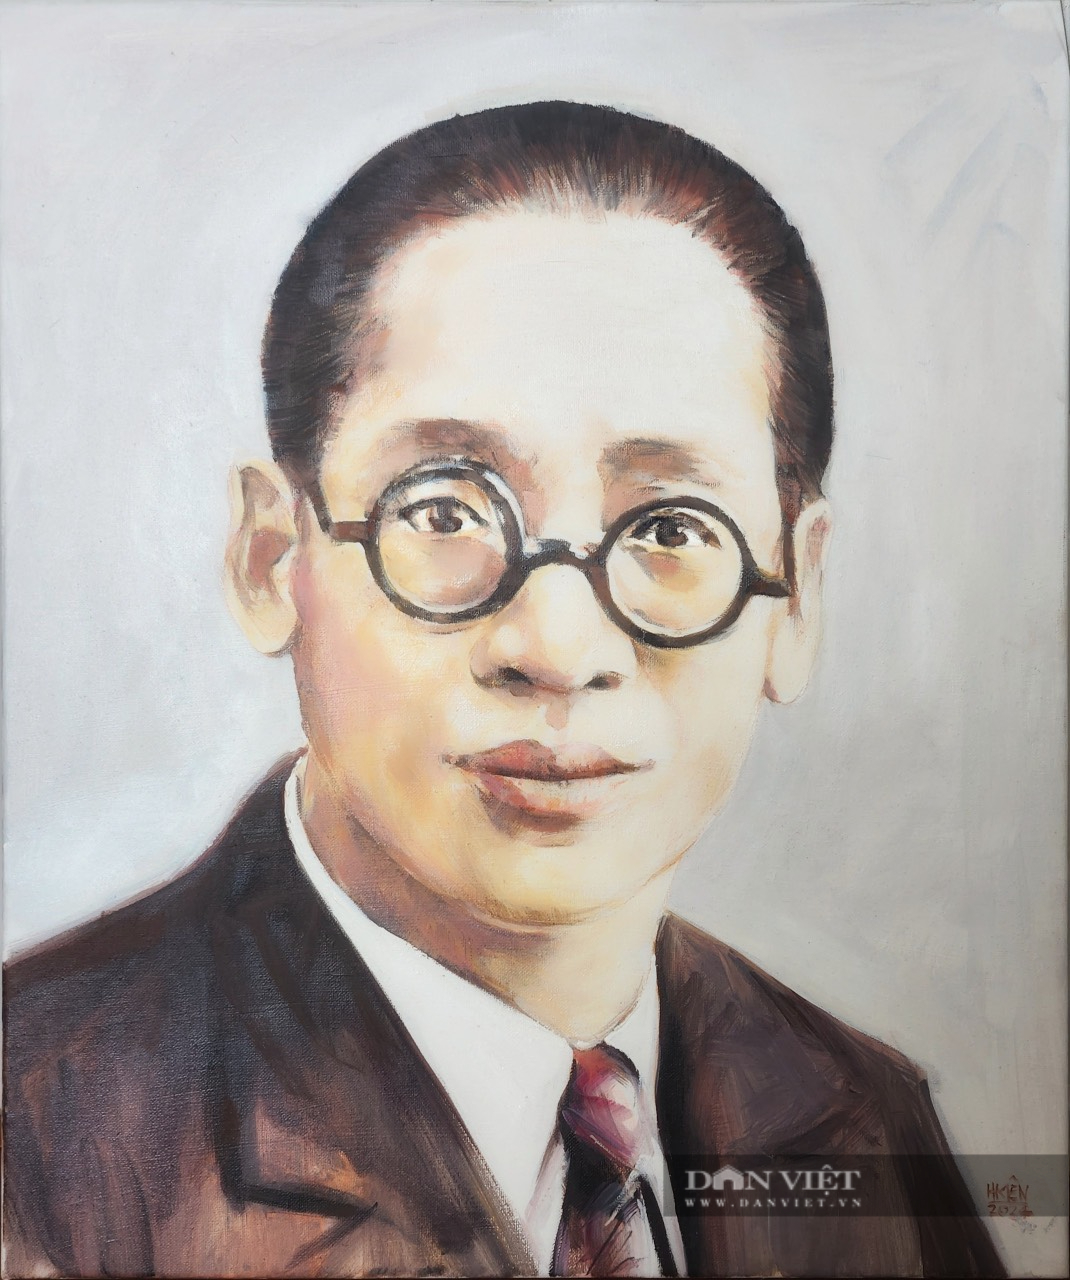 Triển lãm tranh vẽ về doanh nhân Phạm Nhật Vượng, Trương Gia Bình...- Ảnh 5.